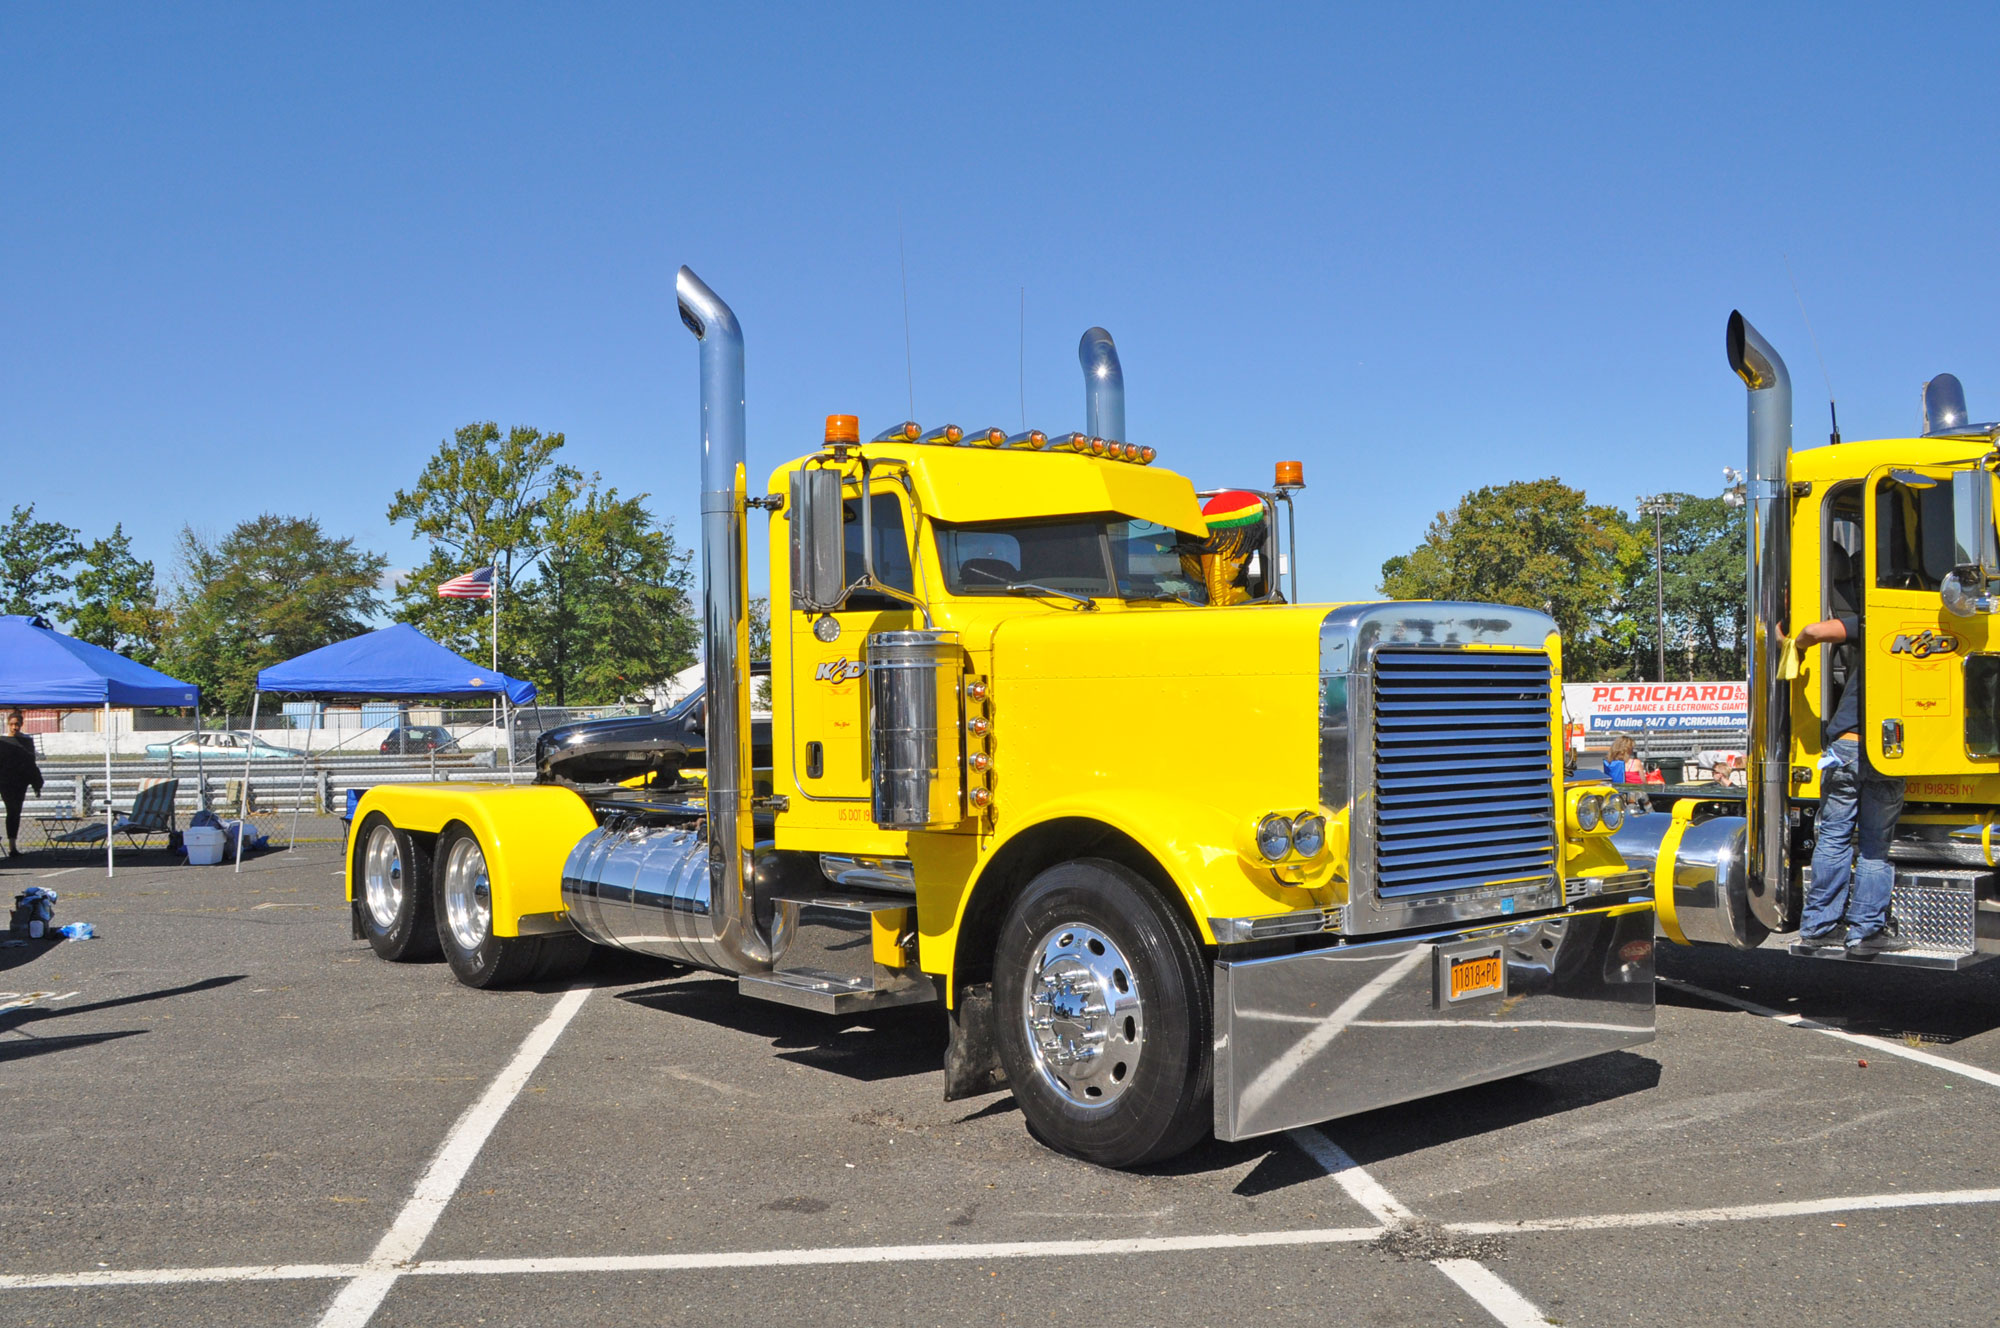 2012 Diesel Truckin’ Nationals – Matt Cutts